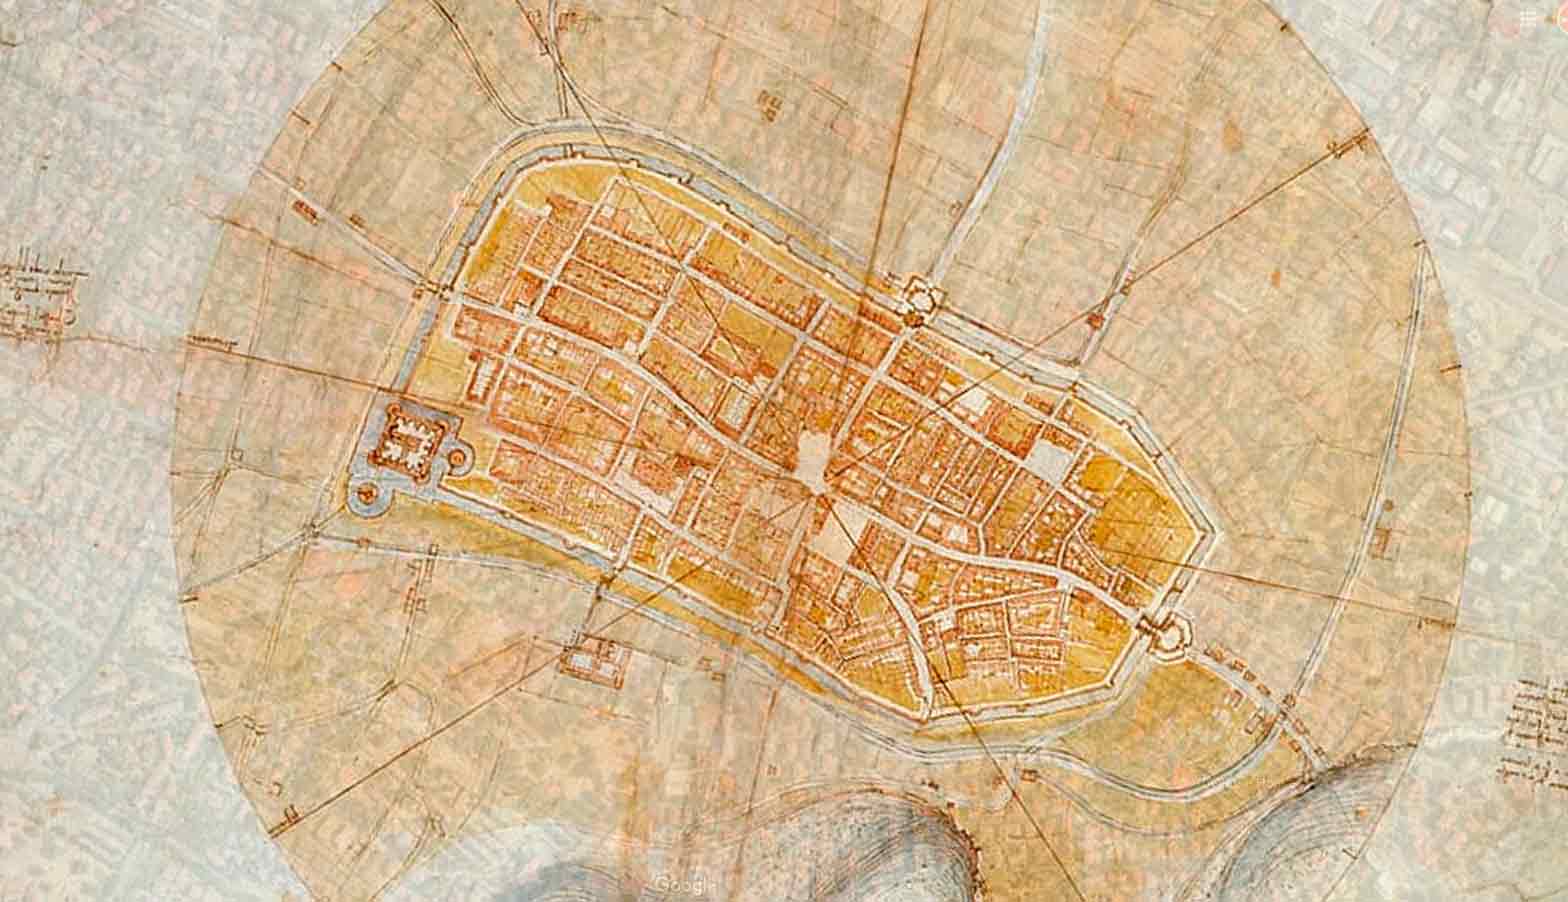 Mapa de Imola desenhado por Leonardo da Vinci sobreposto em imagem do Goolge Maps